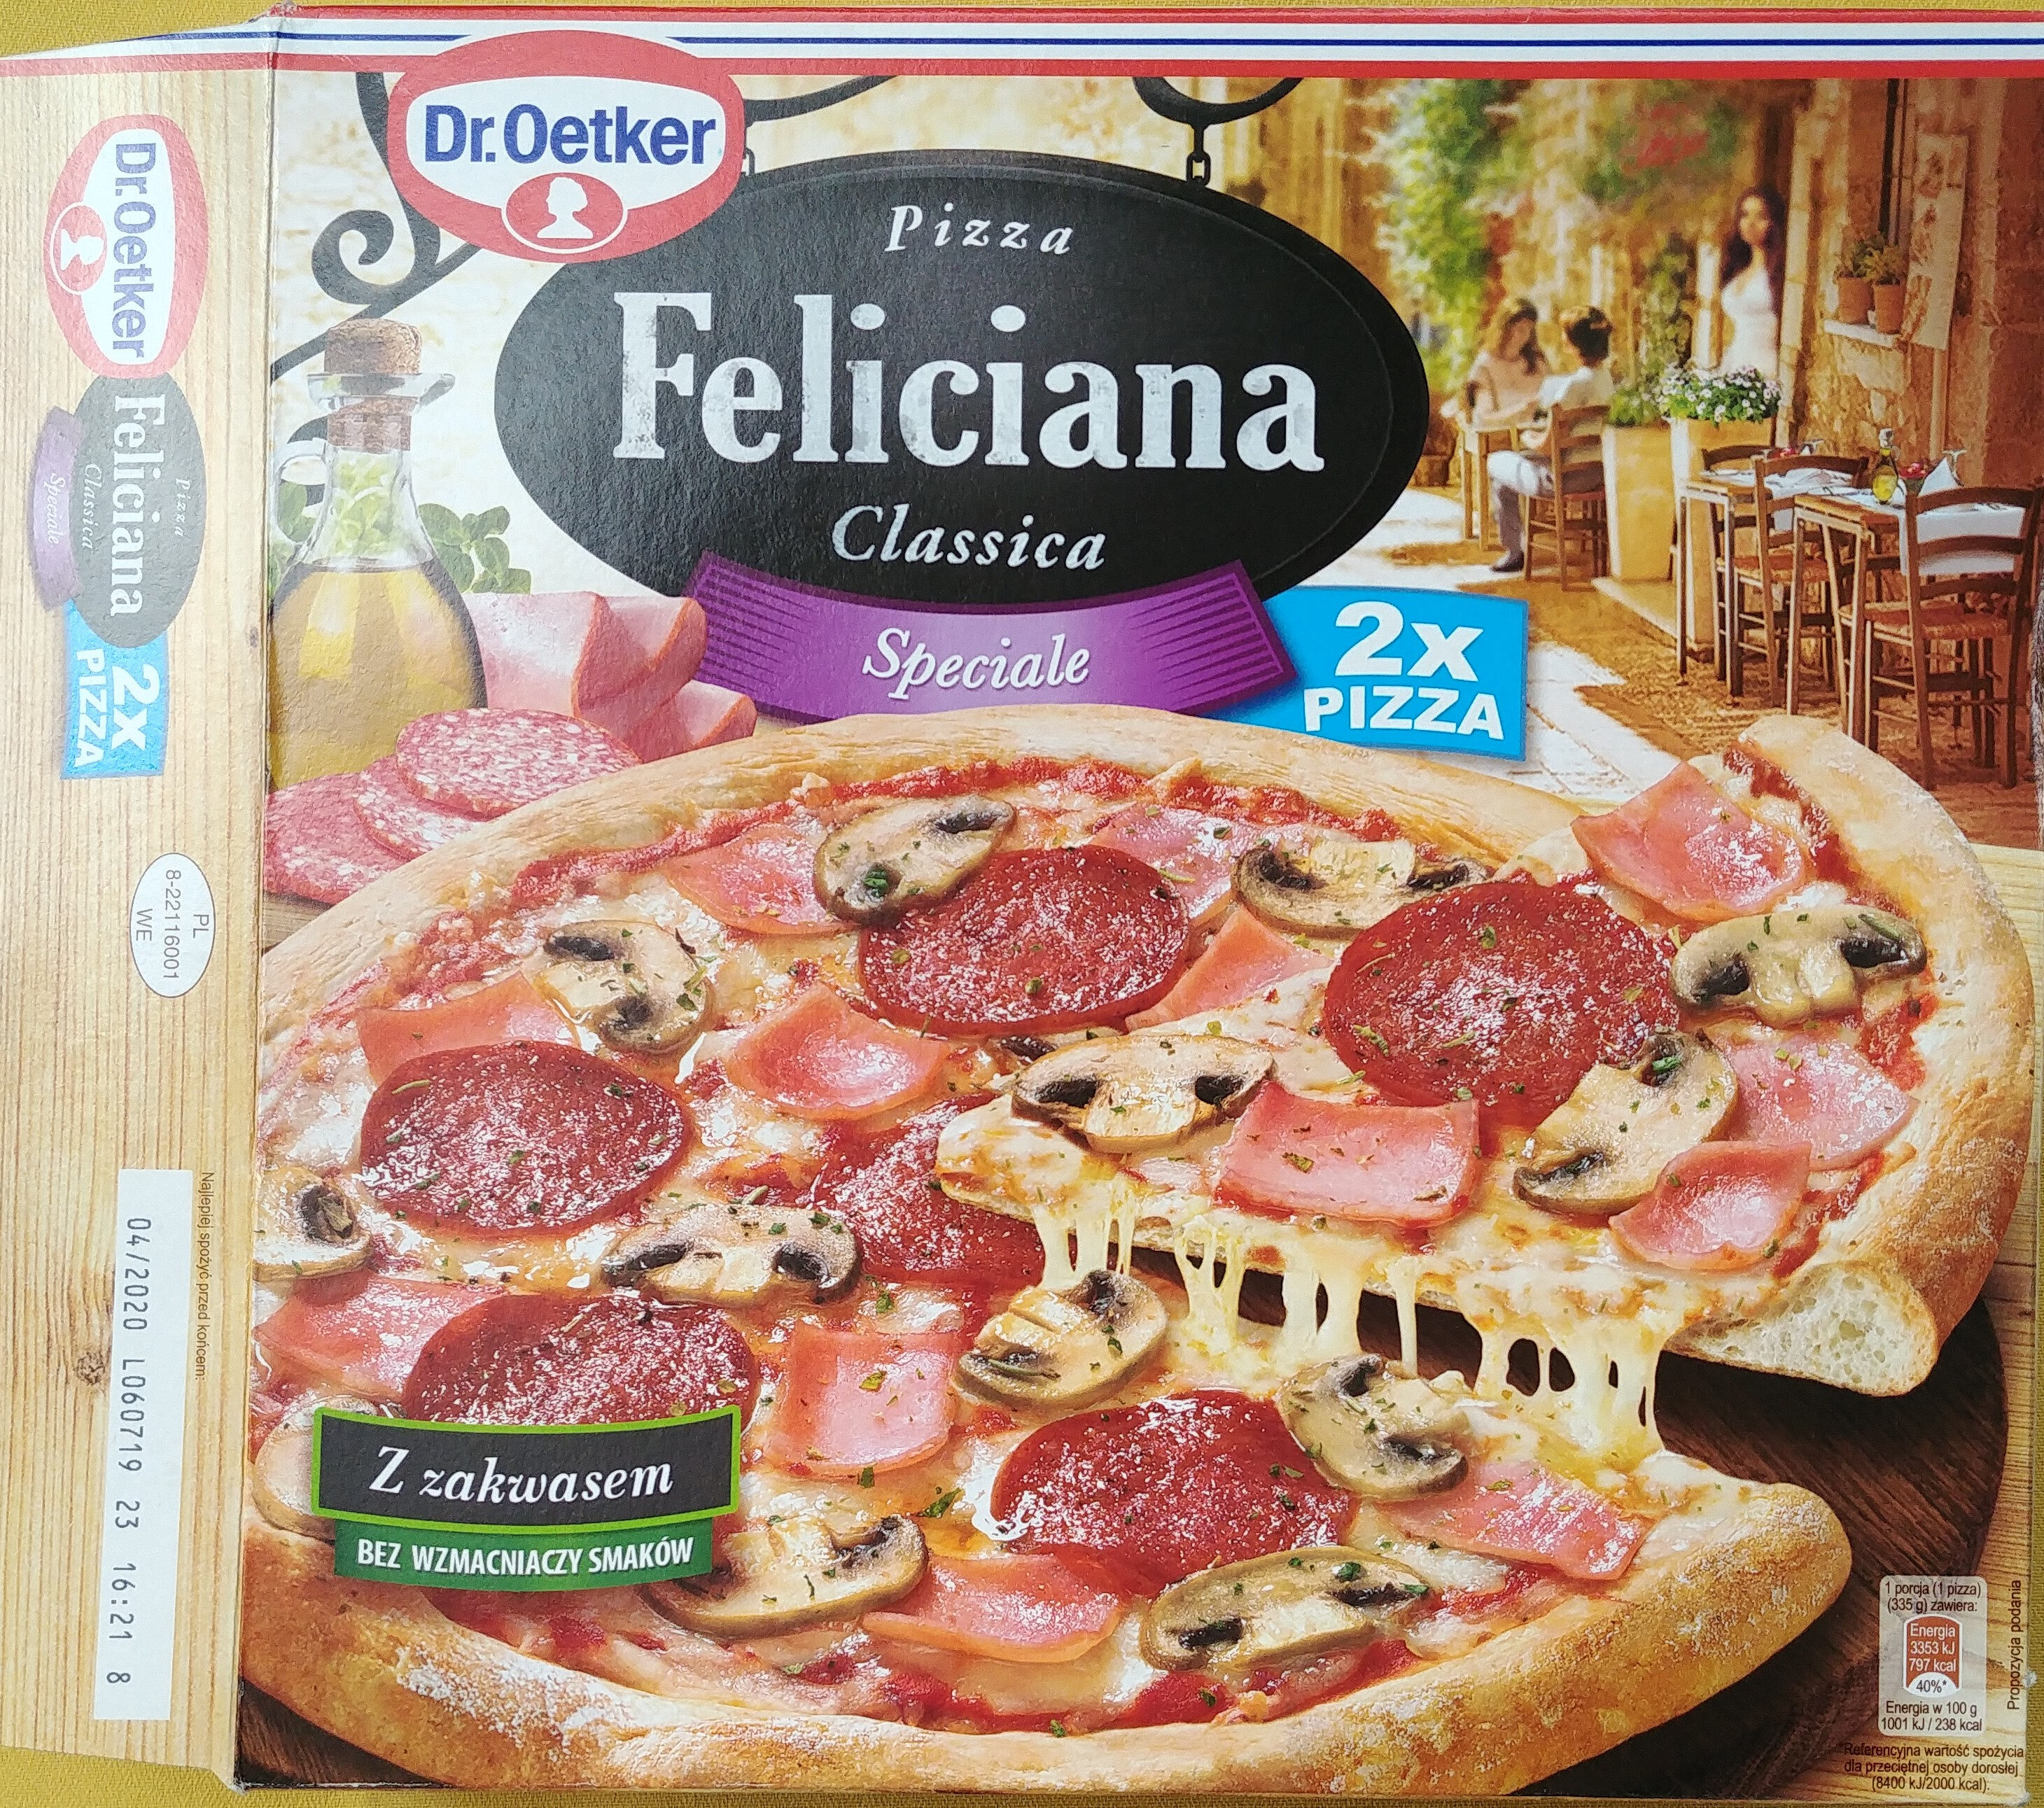 Pizza z szynką, pieczarkami i salami, głęboko mrożona. - Product - pl